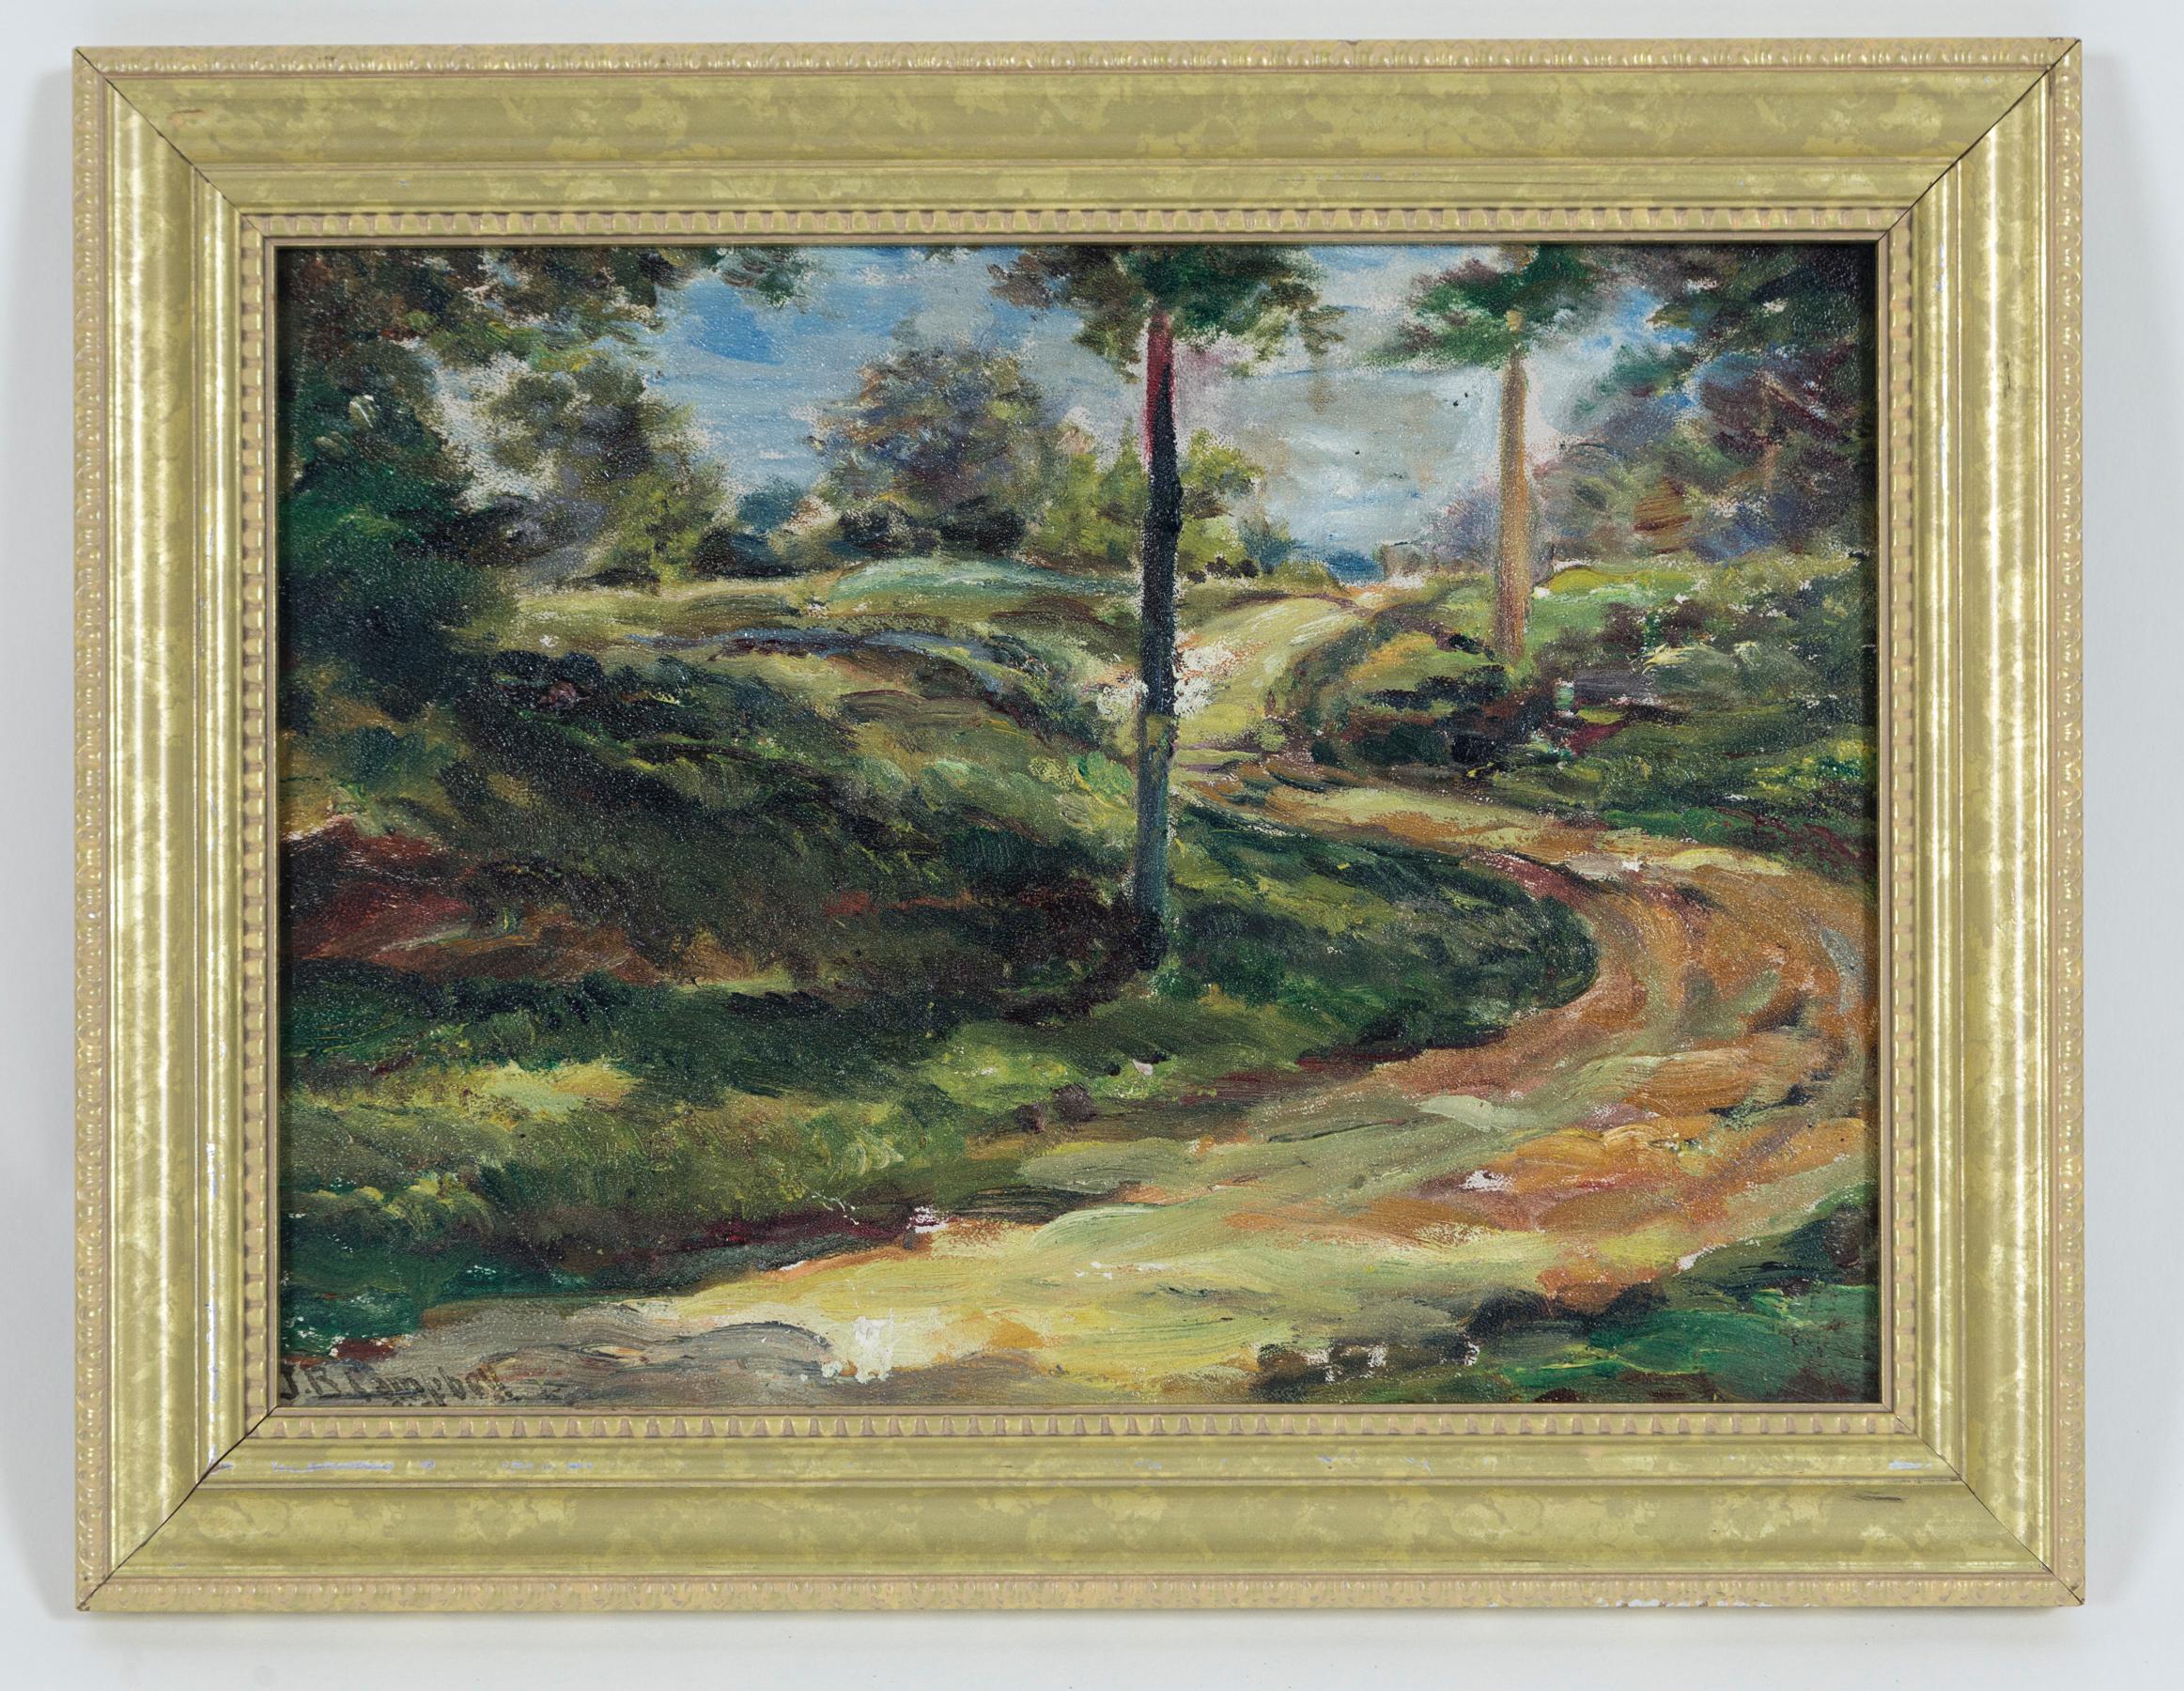 Peinture de paysage de l'école américaine, huile sur carton, 19e siècle. Un charmant paysage boisé impressionniste. La signature en bas à gauche indique J.B. Campbell.
Étiquette au dos : F. W. Devoe, Artists Supplies, New York City.